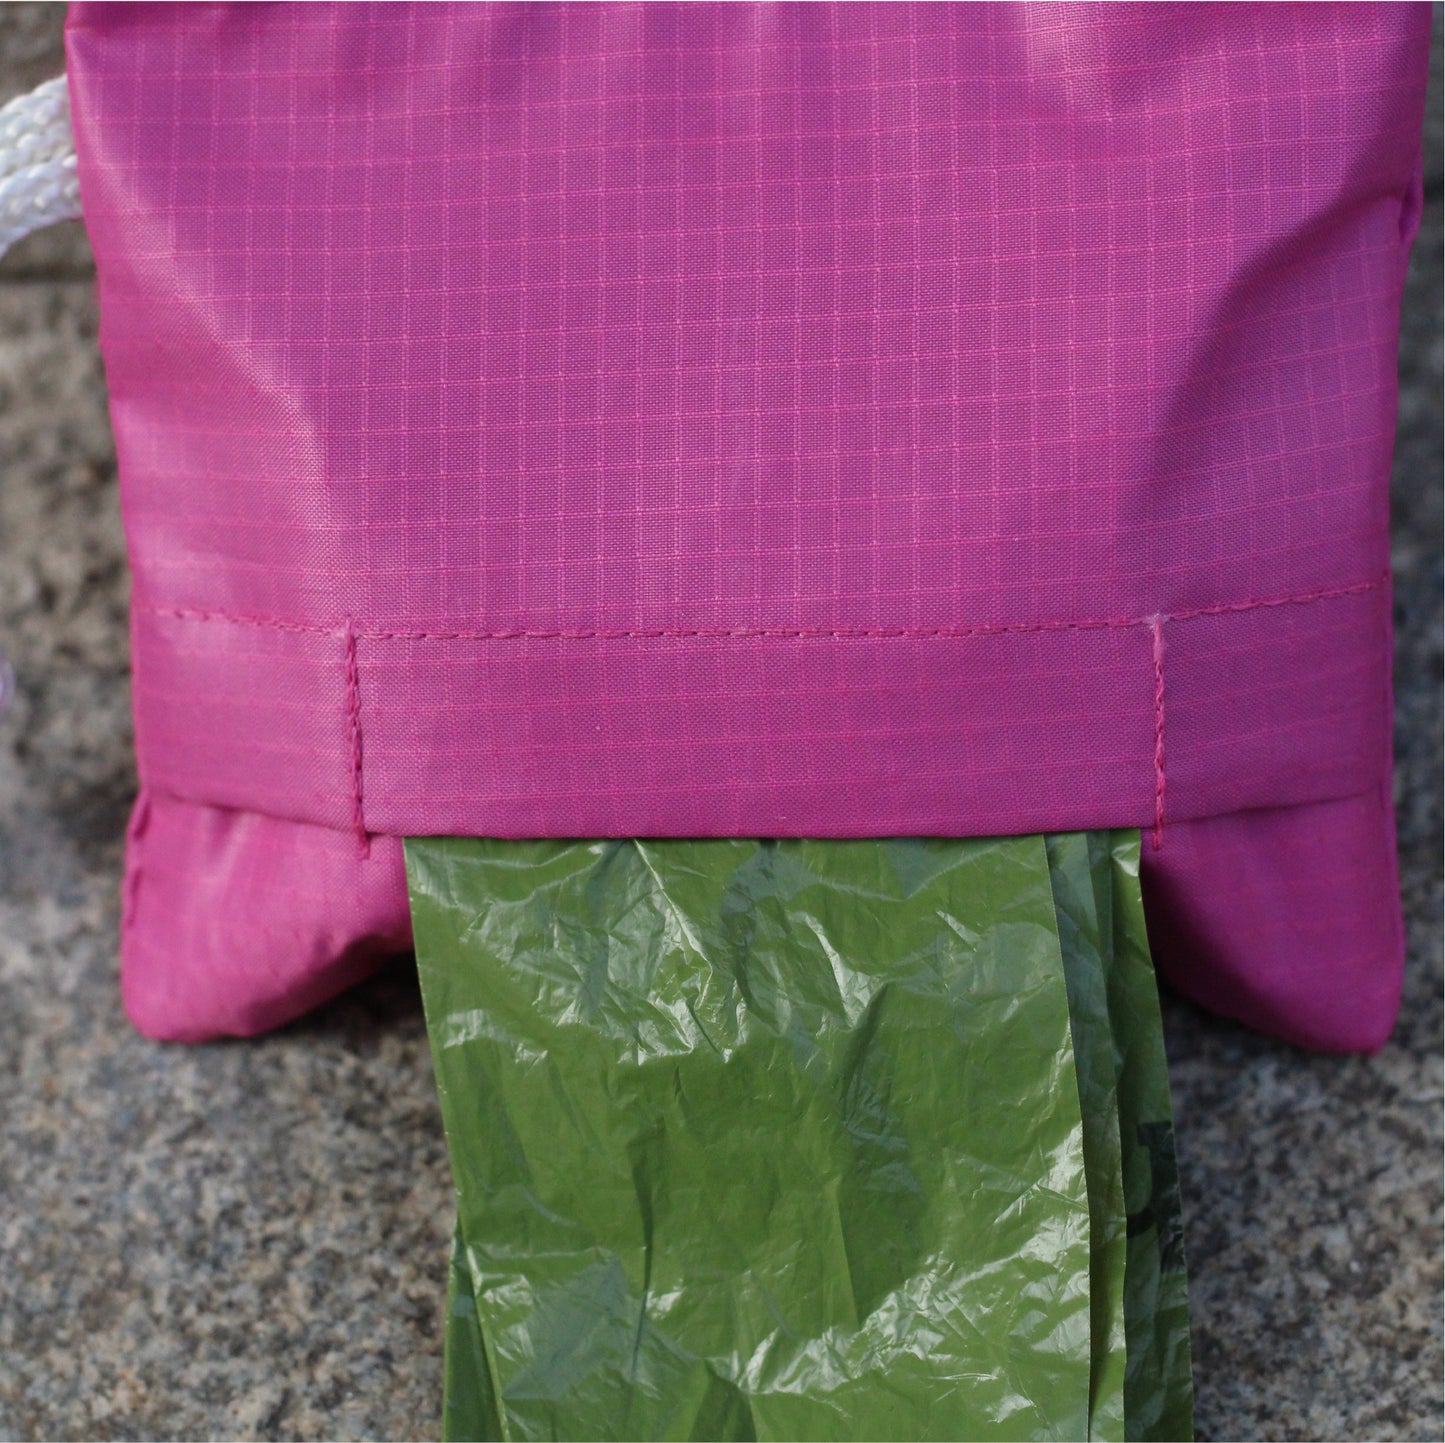 Upcycling " Poo-Bag-Holder", Pink